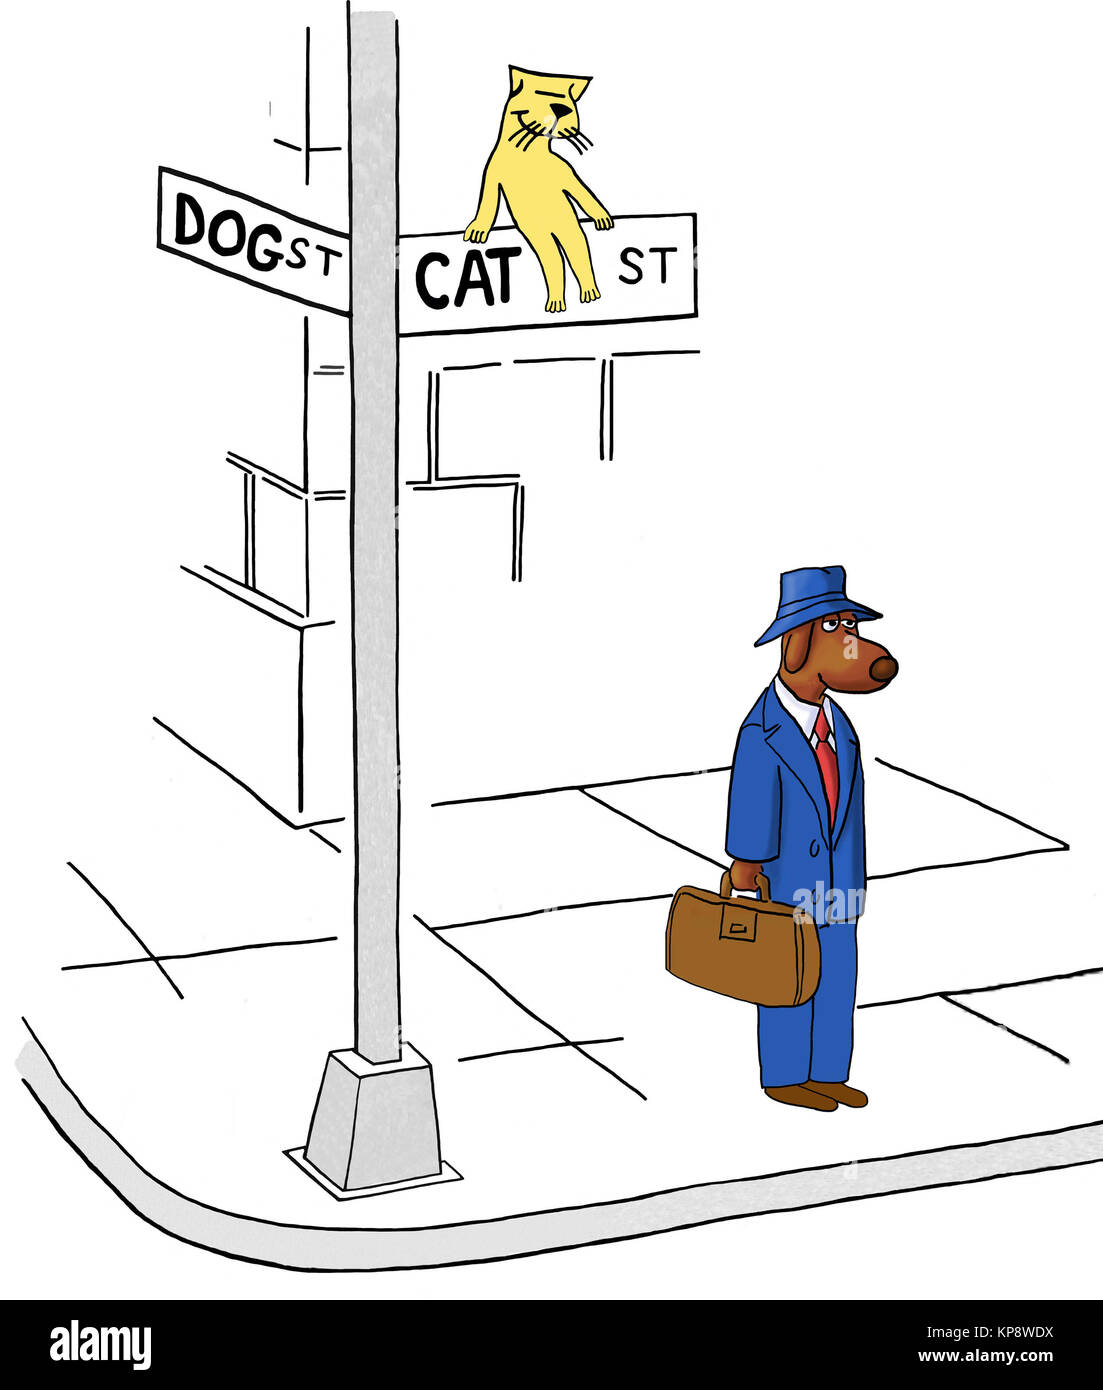 L'entreprise chien a empiété sur Cat Street. Banque D'Images